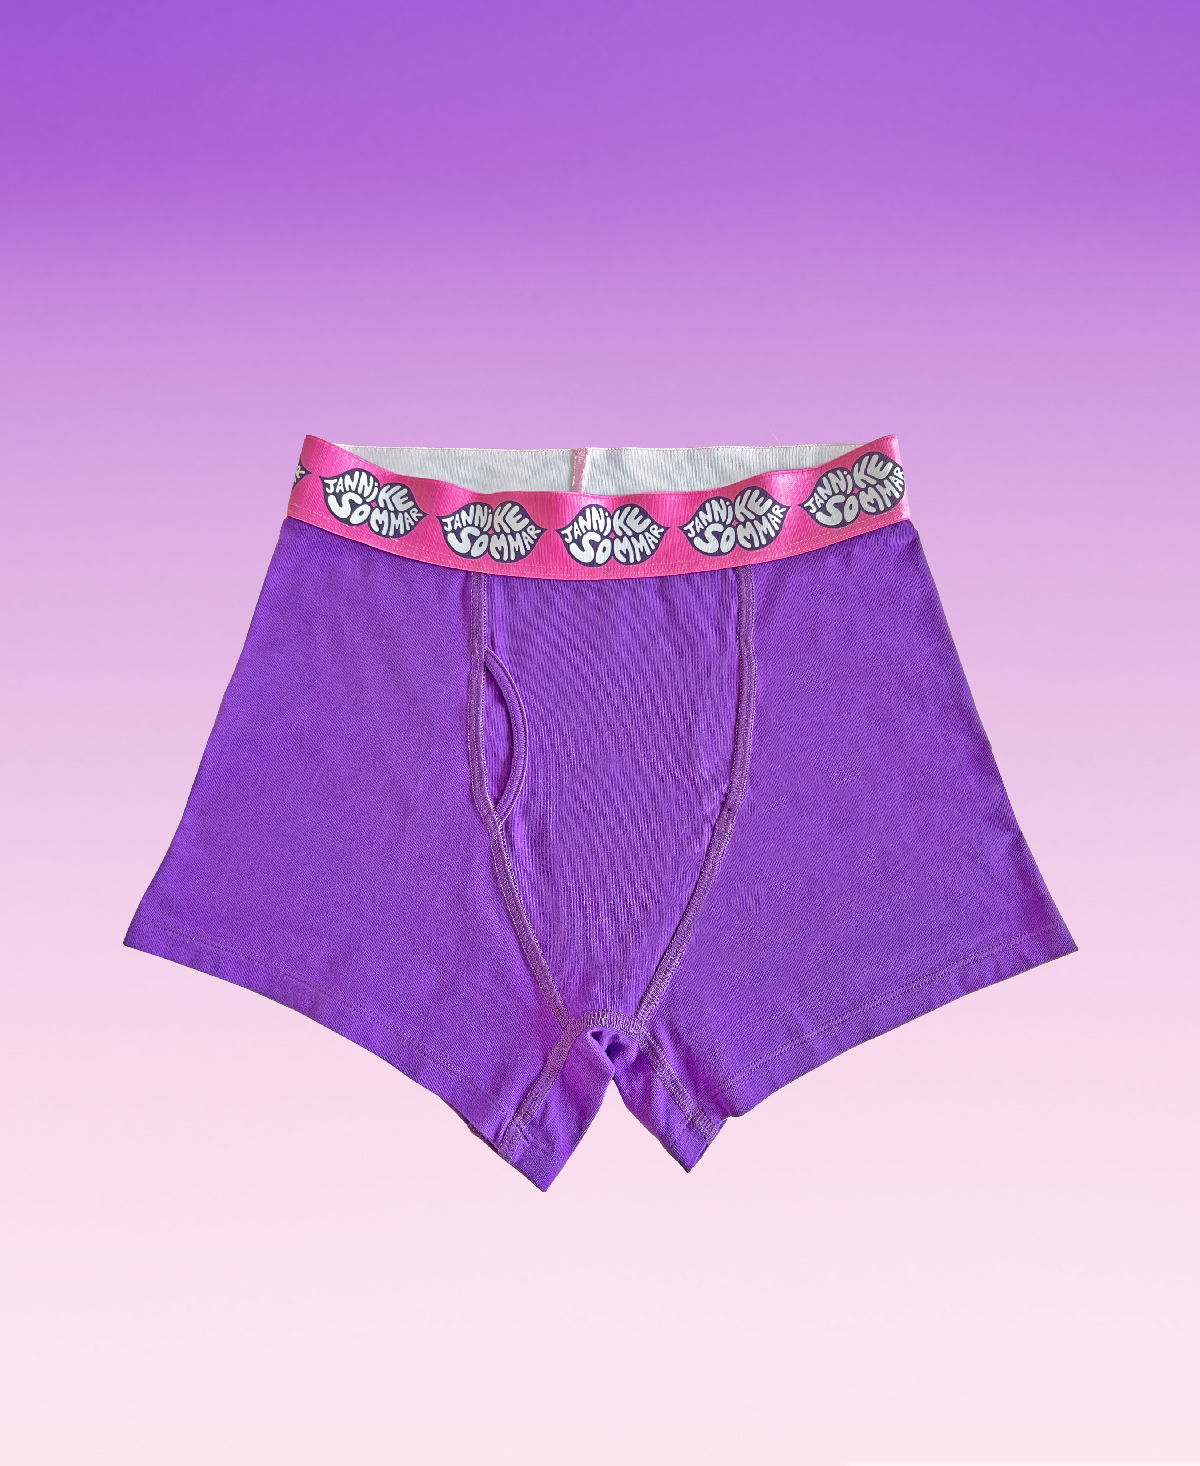 ZZKKO Leisure Workout Underwear Brief Boxer Purple Flue de Lis